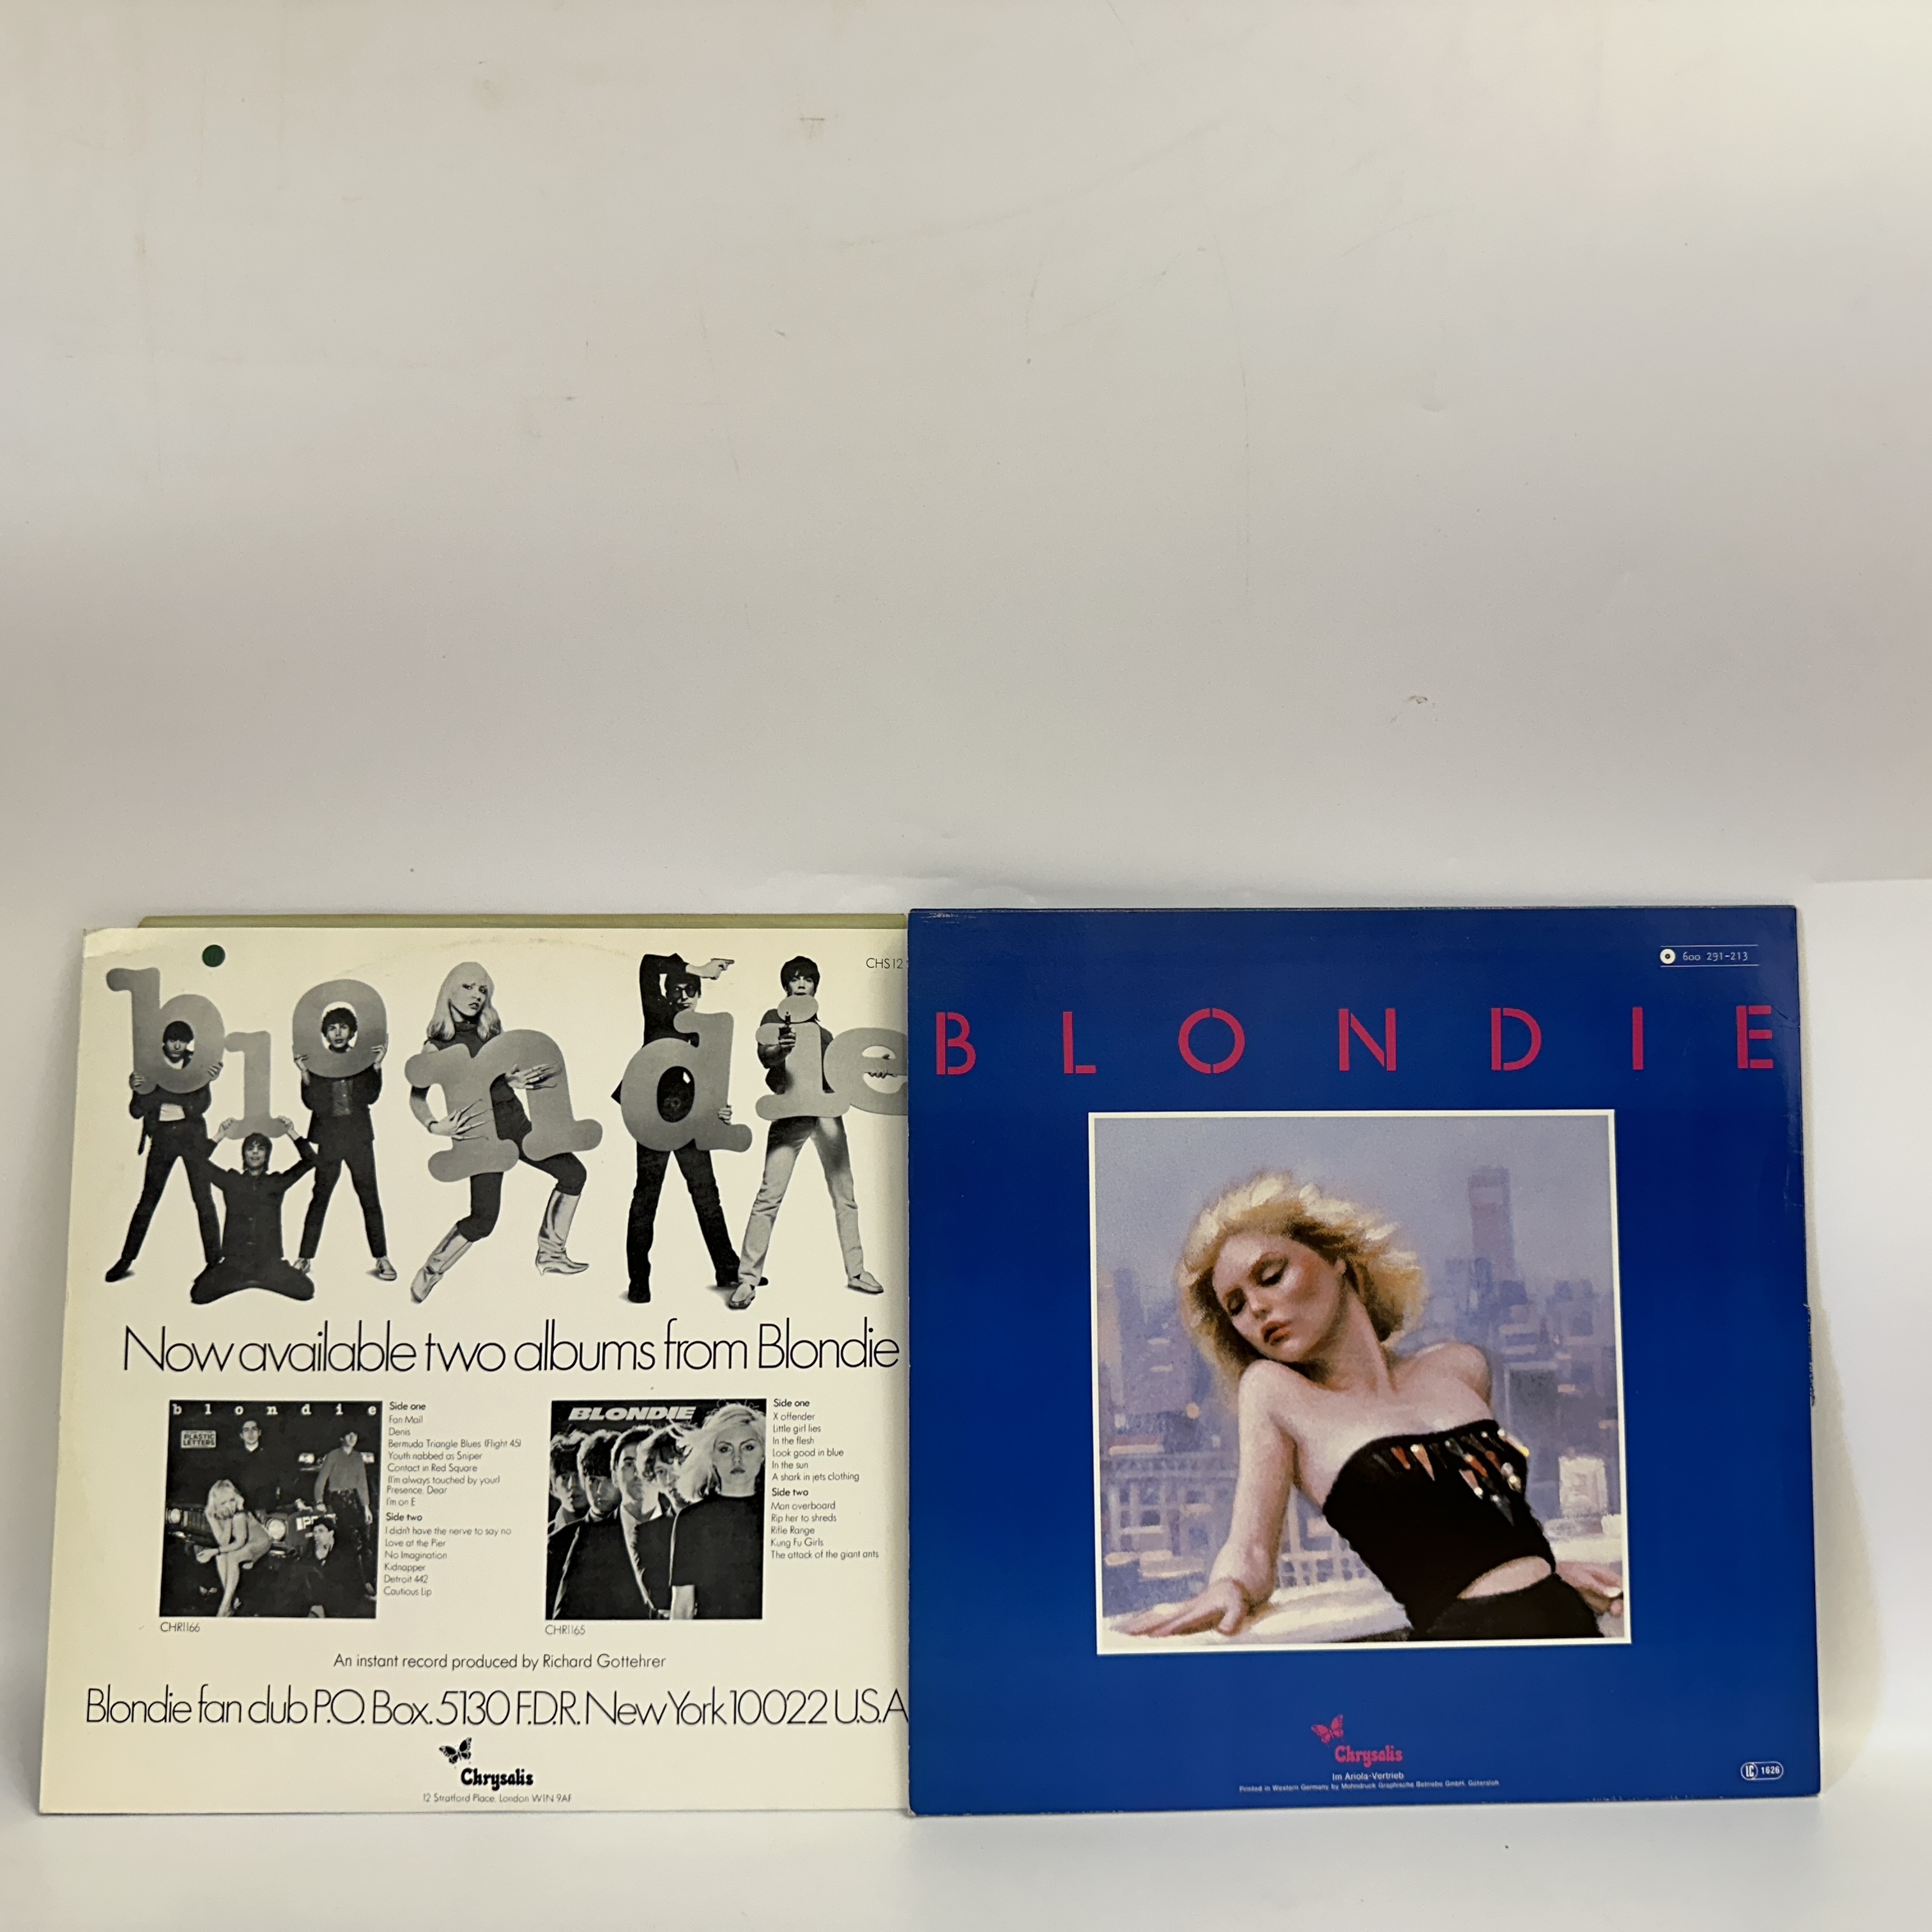 2x 12" vinyl LPs - Blondie - Image 2 of 2